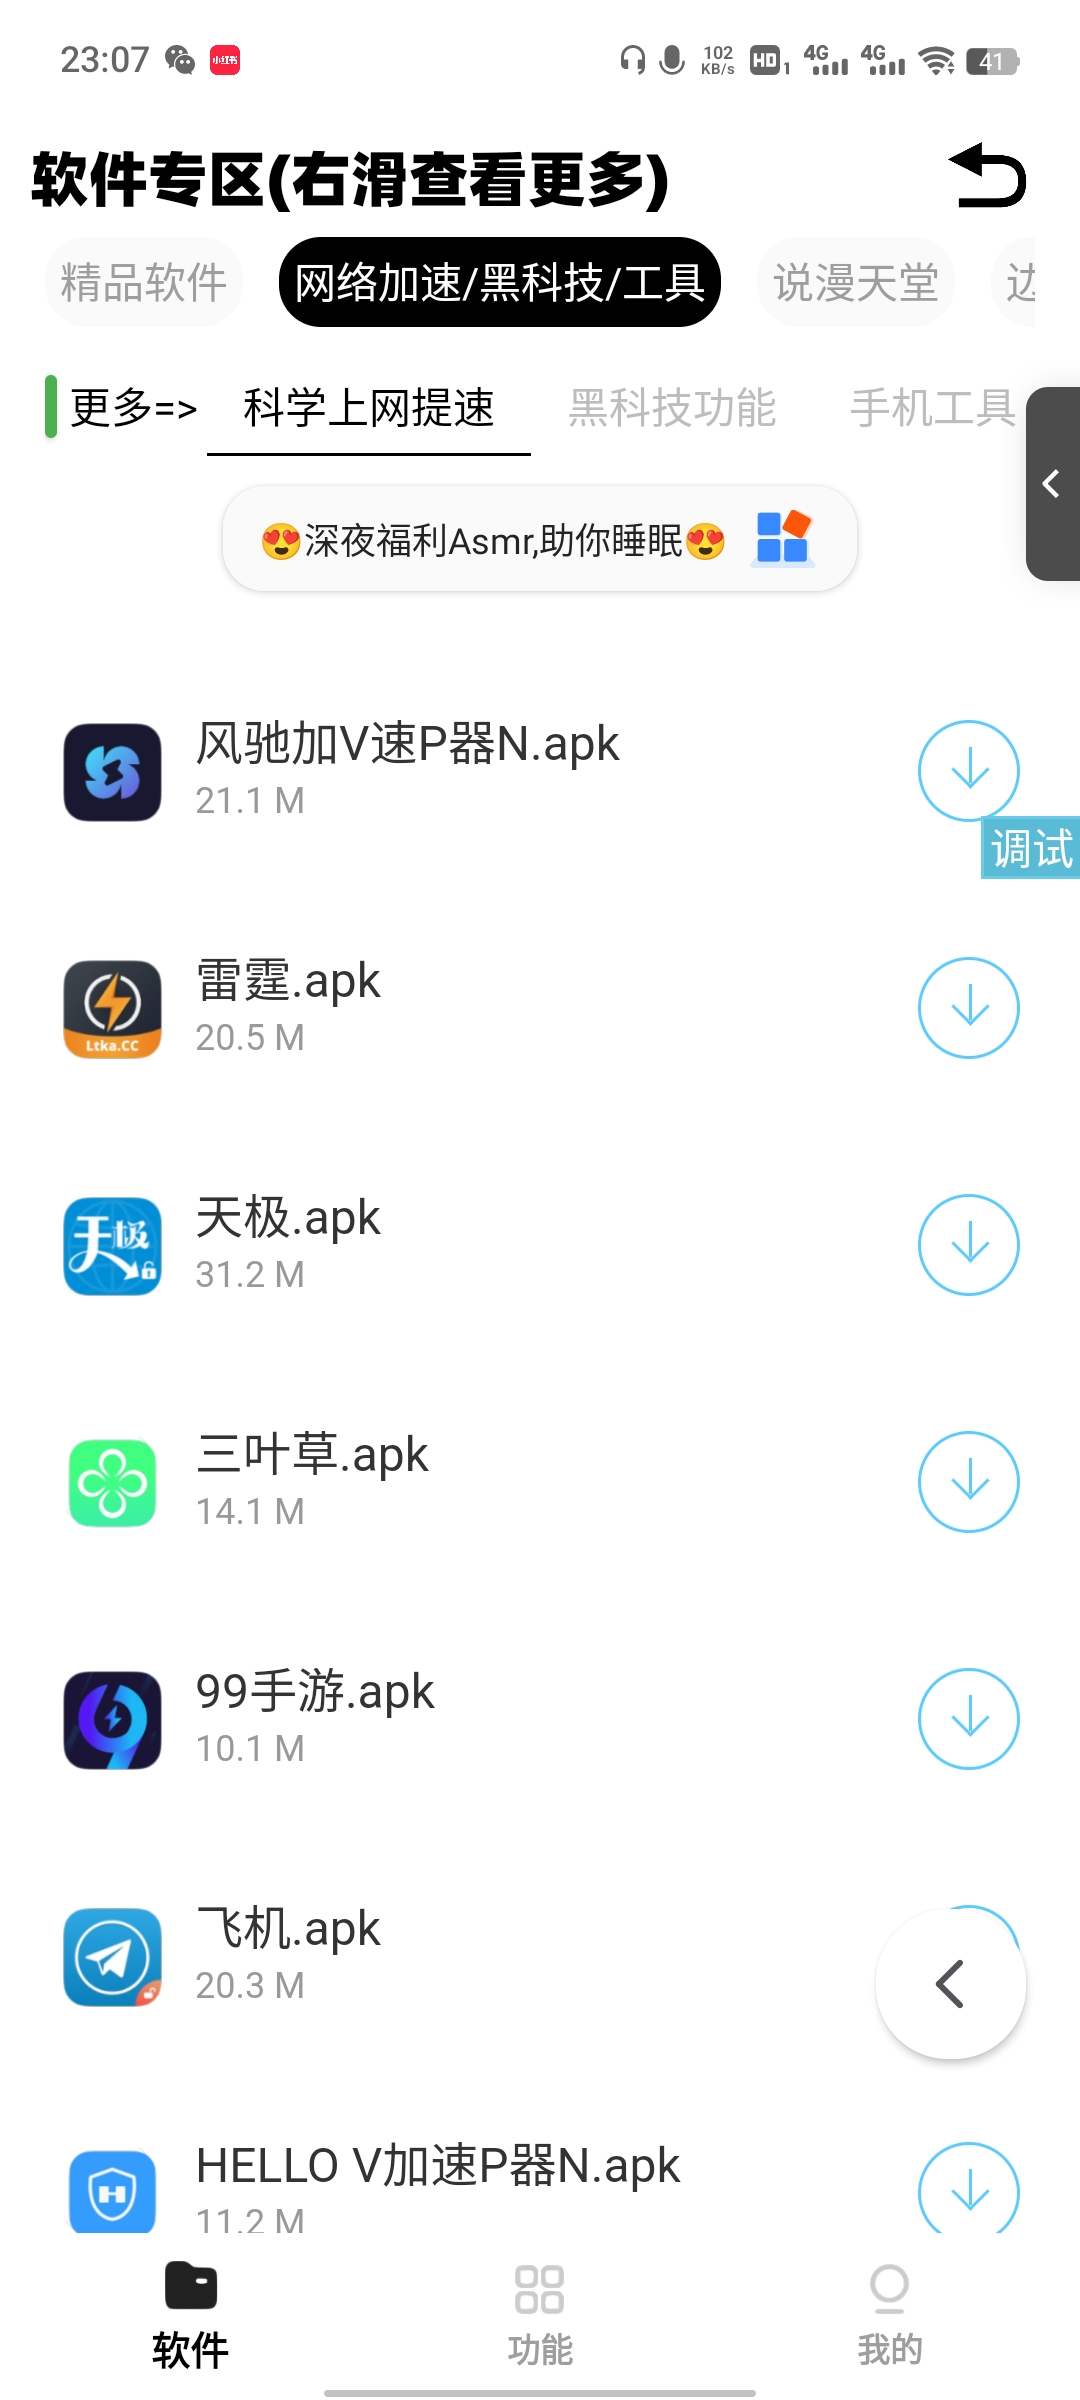 iApp 最新多功能无需服务器软件库源码